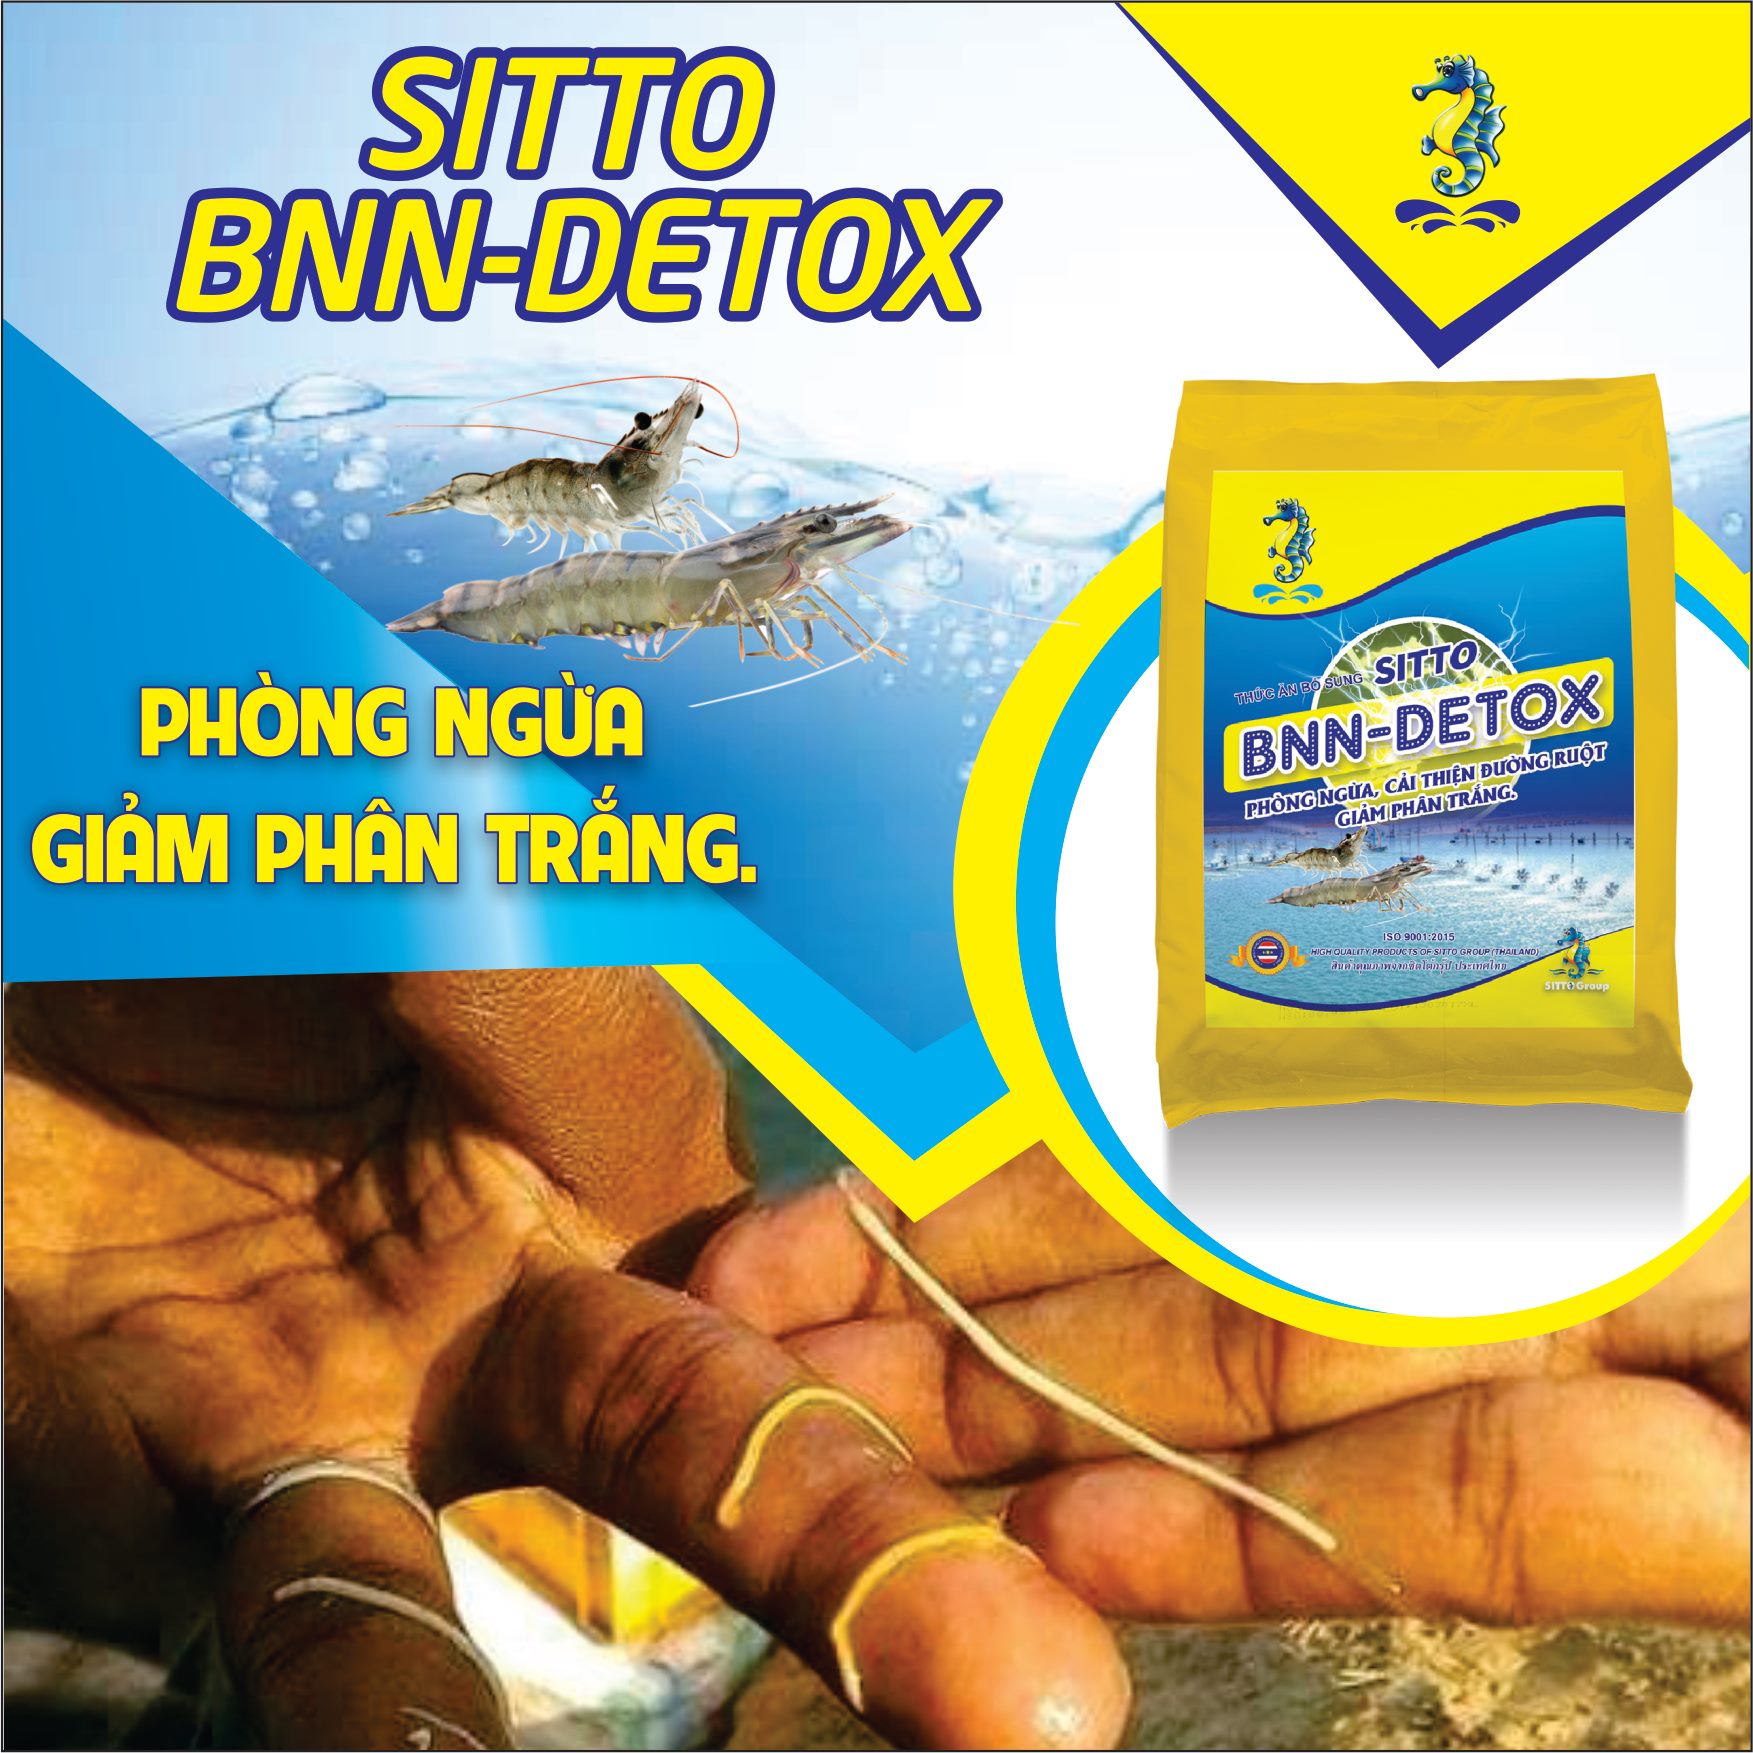 Sản phẩm Dinh dưỡng bổ sung - Sitto BNN-Detox (Gói 500g) - Phòng ngừa phân trắng